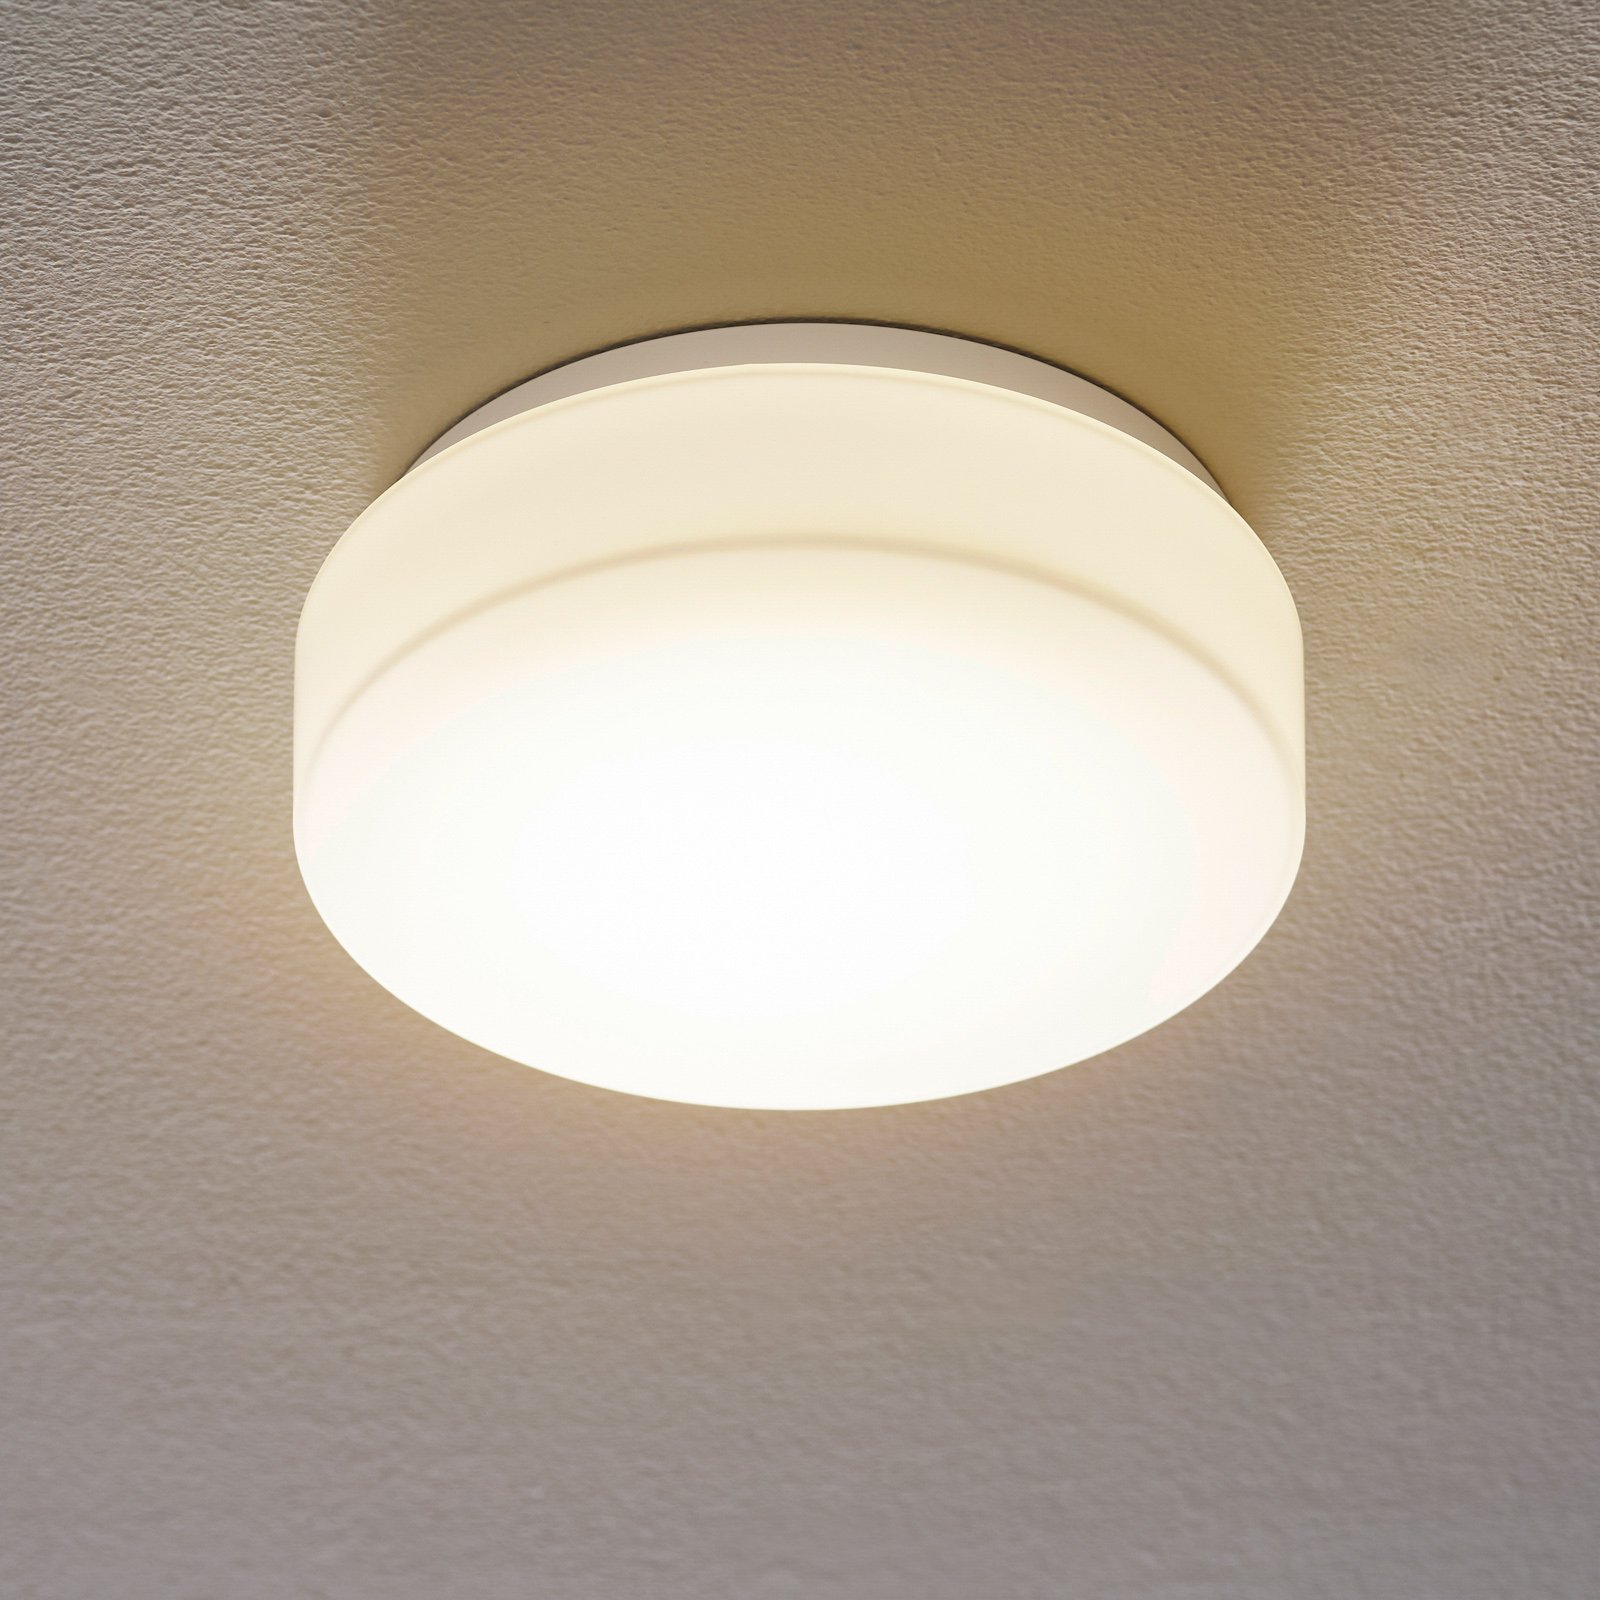 BEGA 50078 LED ceiling light DALI 3,000 K Ø 25 cm